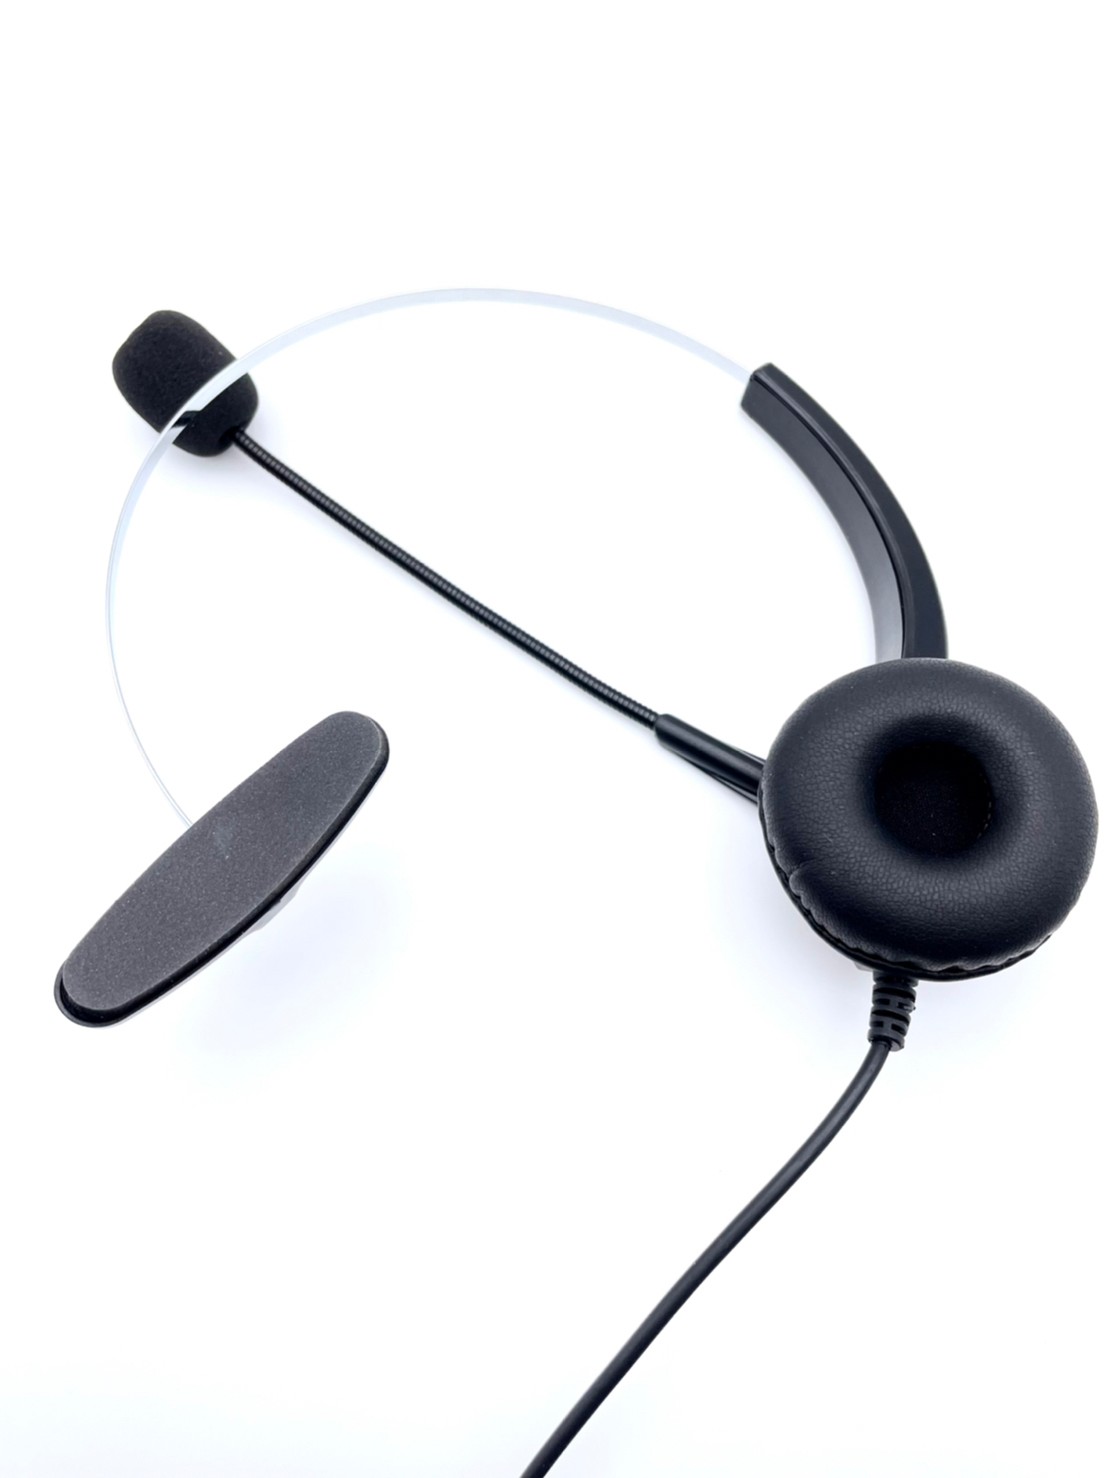 電話耳機推薦 當日下單出貨 電話耳機 TECOM 東訊 SD7610話機 另售avaya耳機 panasonic電話耳機 cisco ip phone耳機